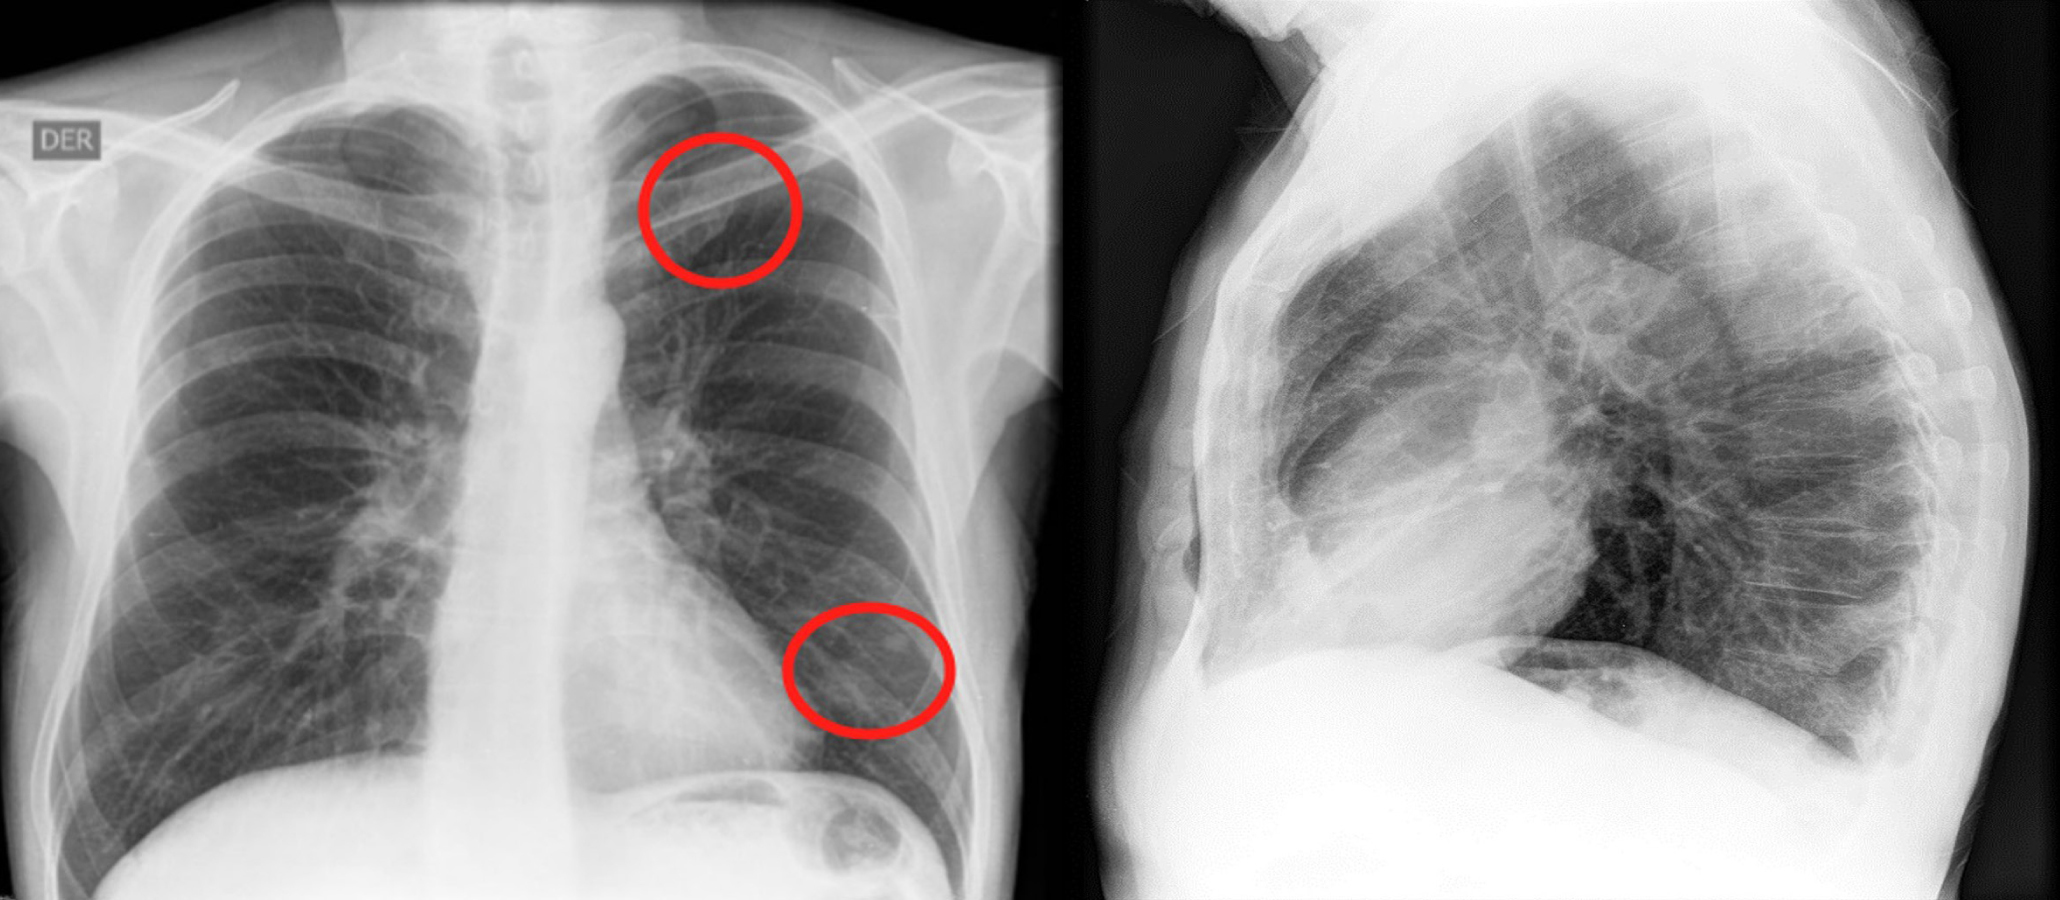 Figura 1. En la radiografía de tórax se observan opacidades nodulares con densidad de tejidos blandos, proyectadas a nivel de los lóbulos superior e inferior izquierdo. Fuente: archivo de los autores.